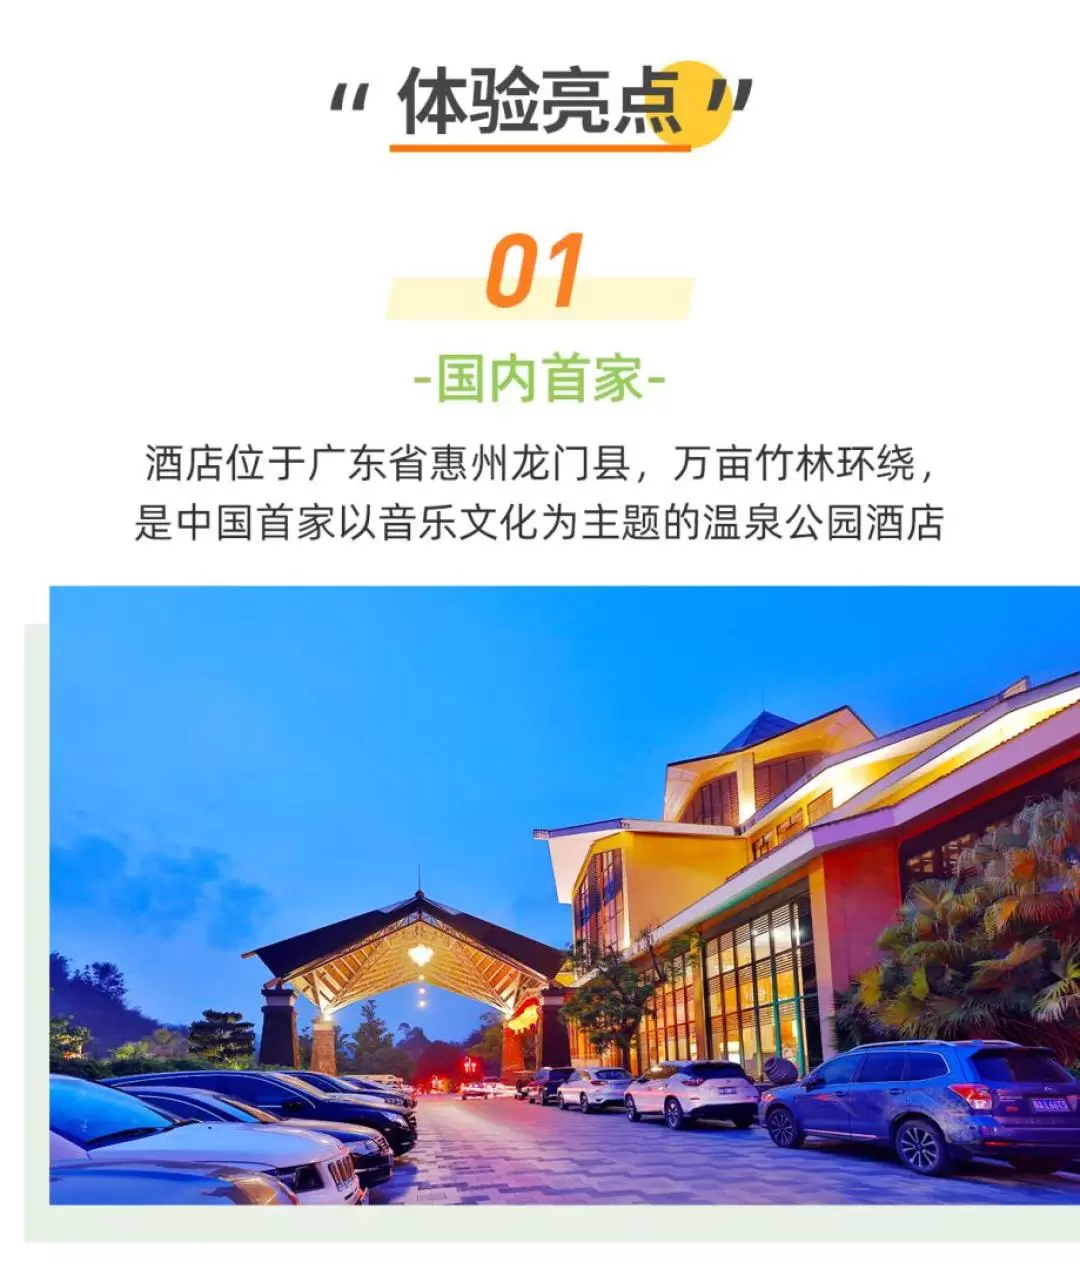 Dipai Hotspring Resort Huizhou